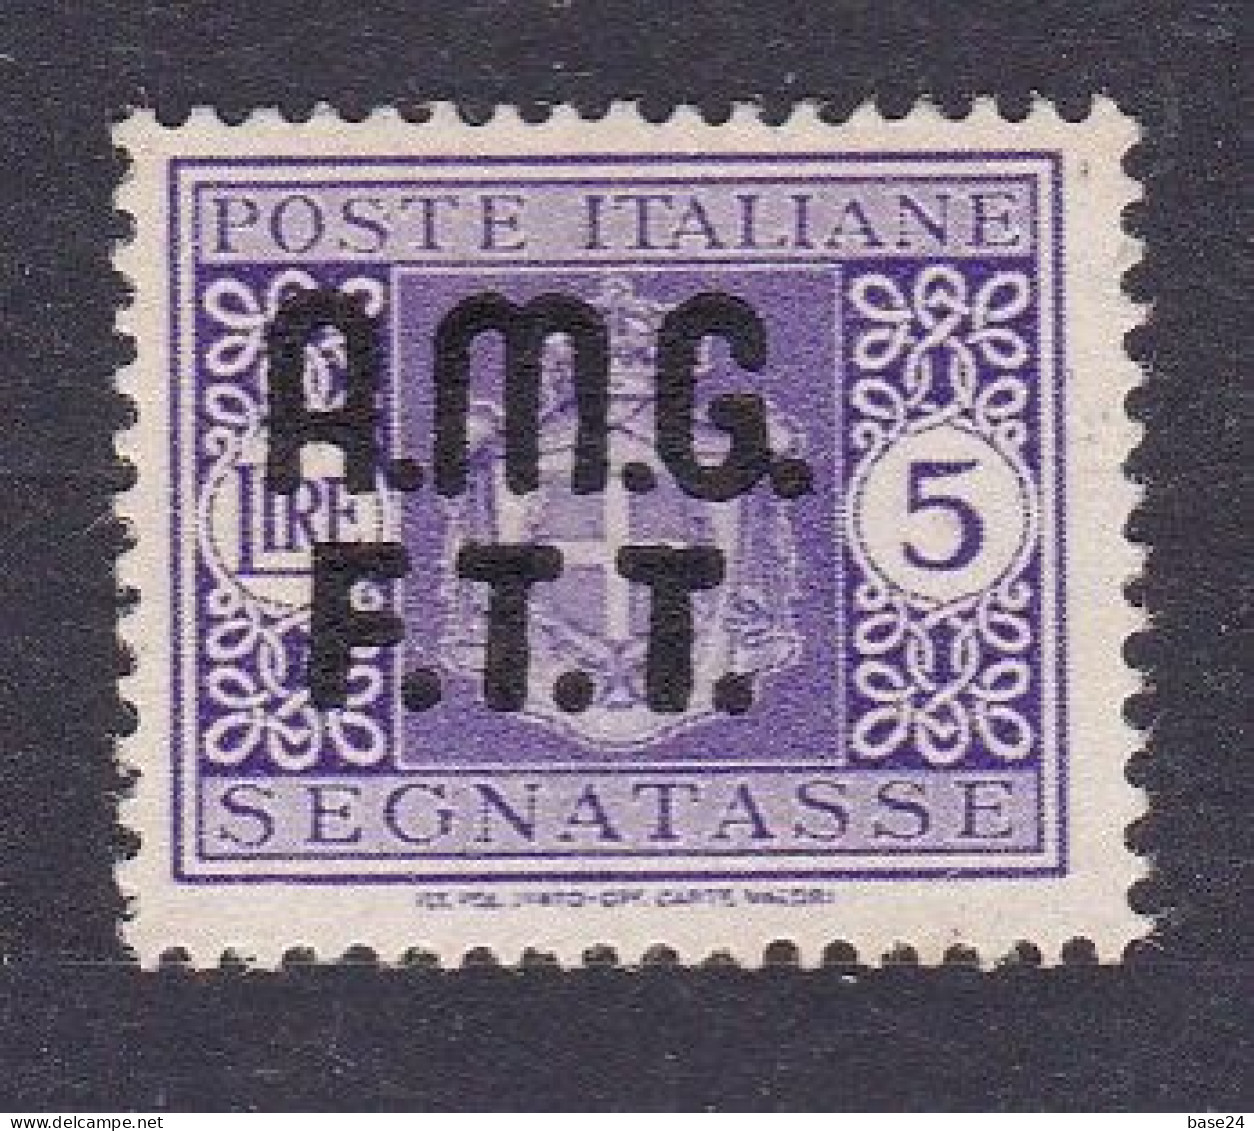 1947 Italia Italy Trieste A SEGNATASSE 4A  POSTAGE DUE 5 Lire Violetto Senza Filigrana MLH* Certif Biondi, Firma A.Diena - Strafport